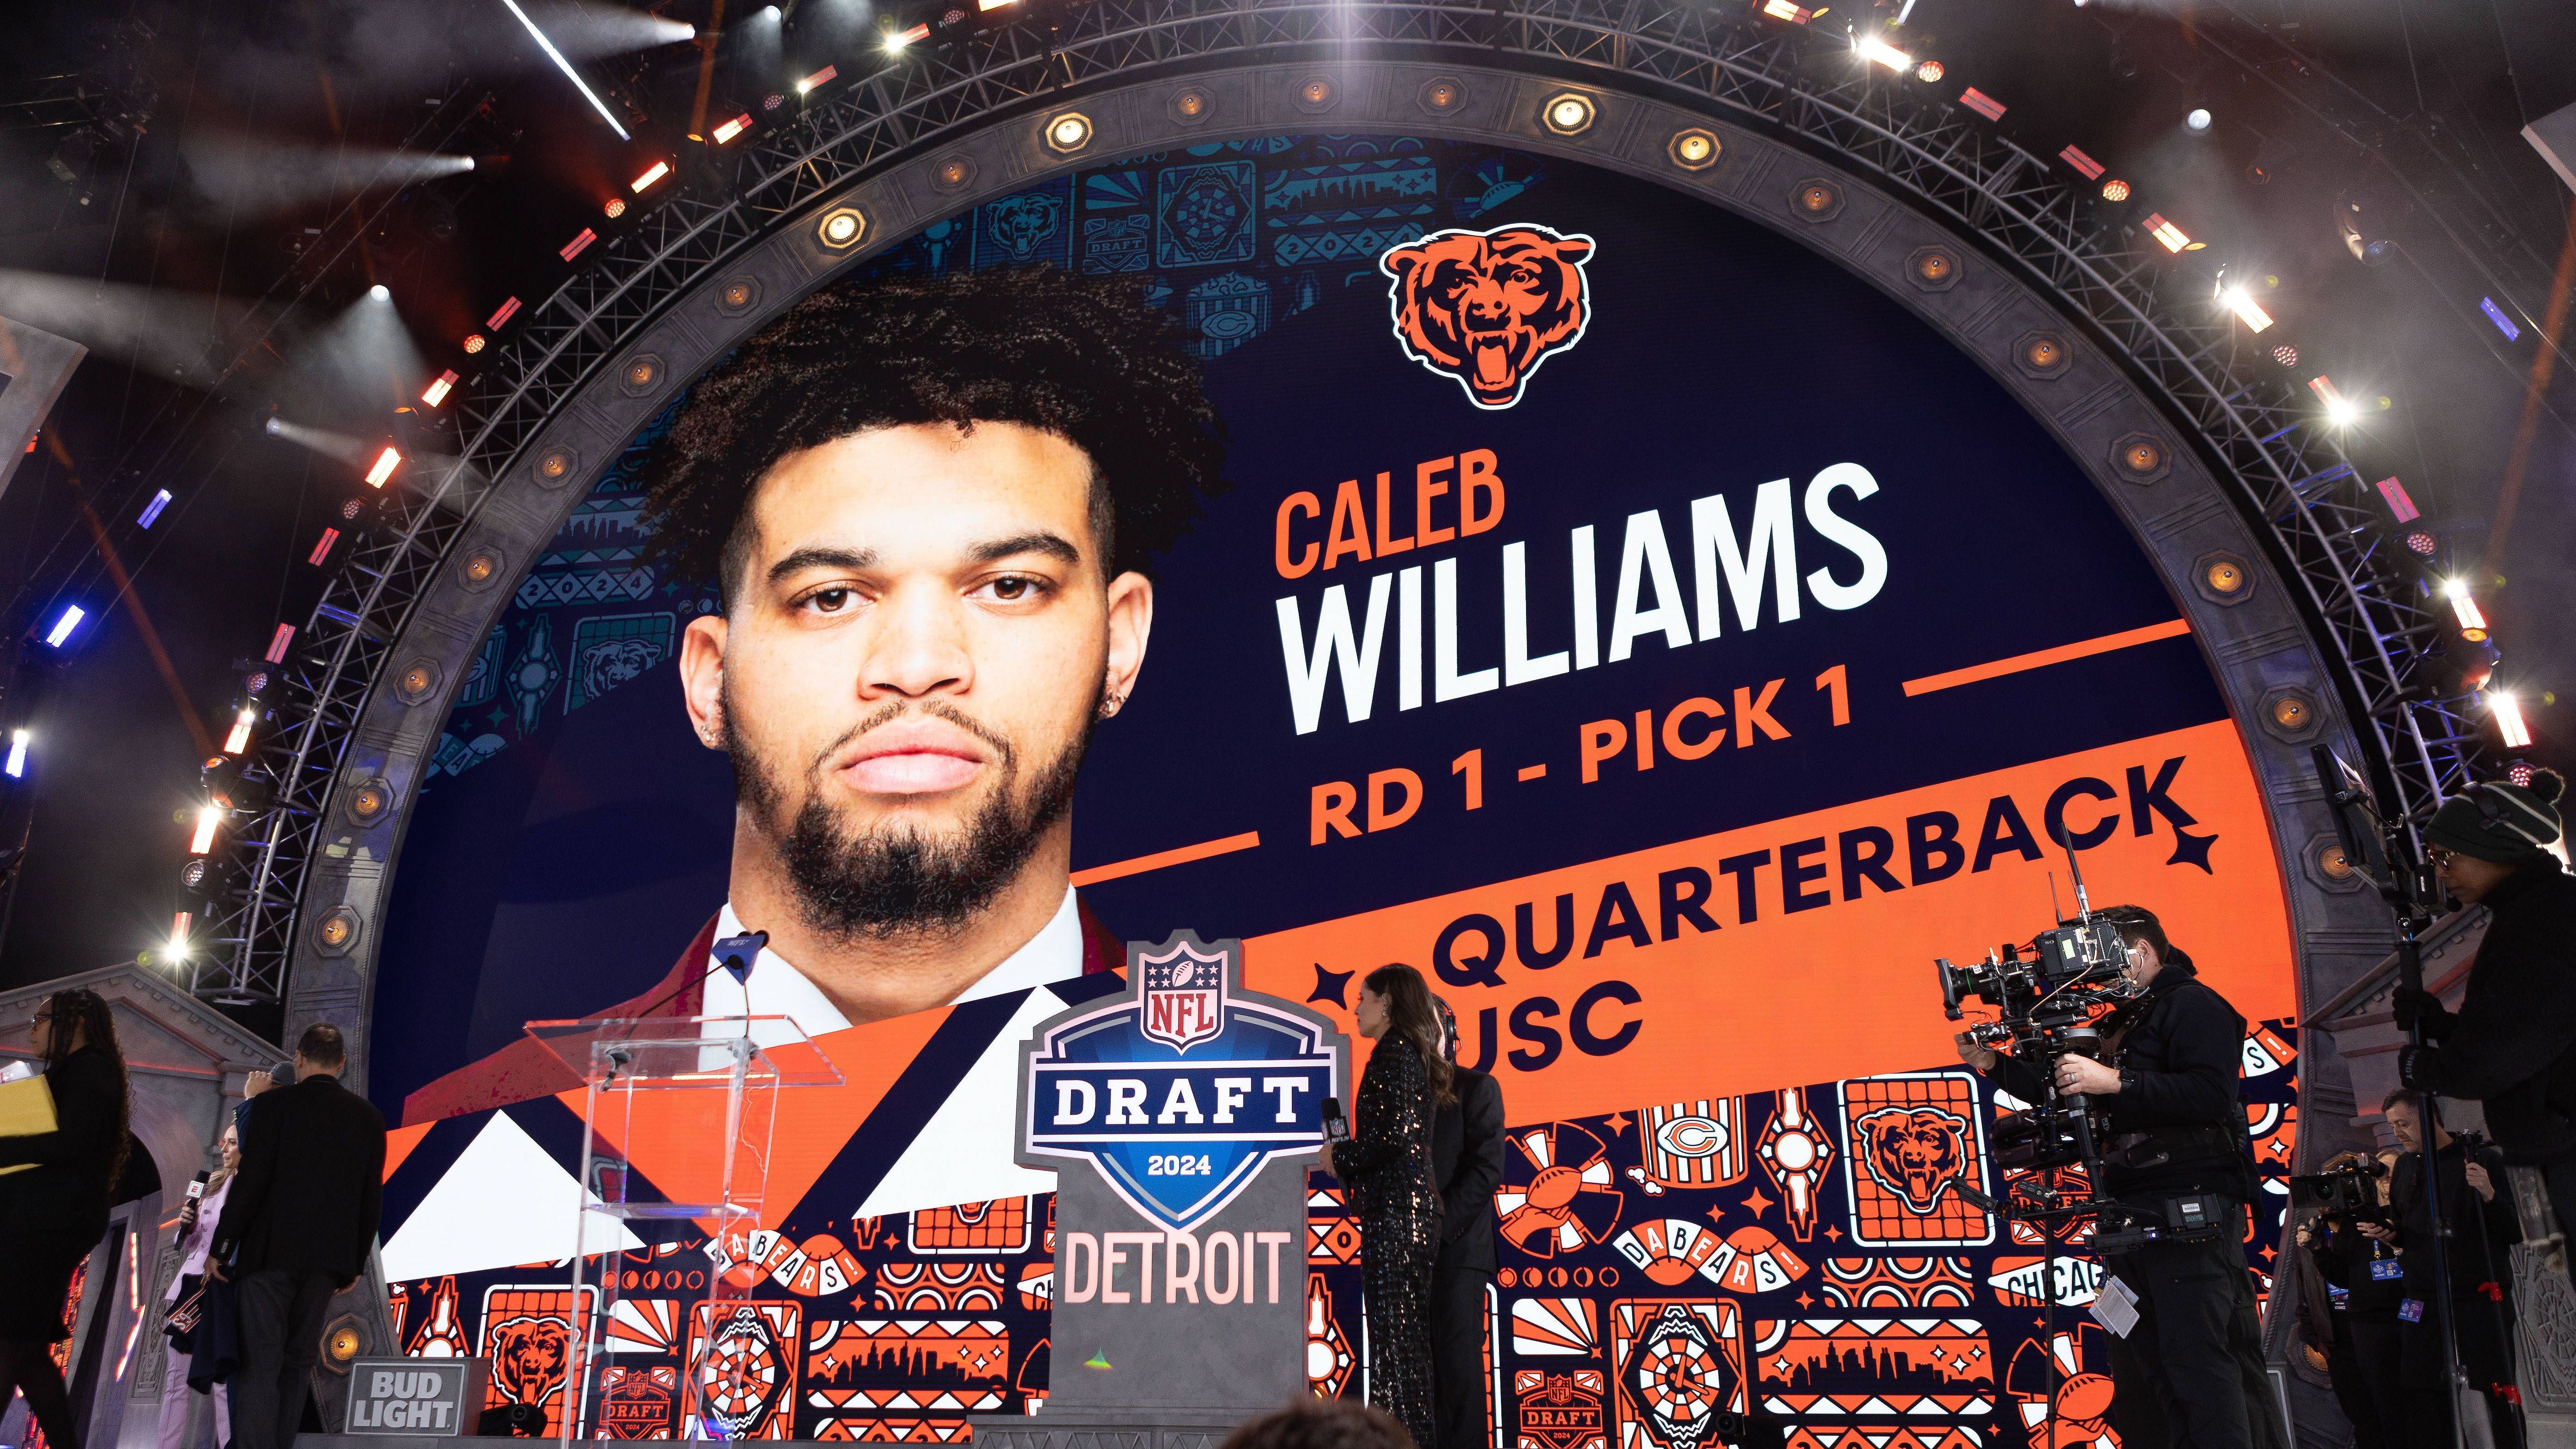 <strong>NFL Draft 2024: Caleb Williams</strong><br>Selten zuvor herrschte vor einem Draft so viel Klarheit wie vor der Talenteziehung 2024. Caleb Williams, Ex-Quarterback der USC, soll die Chicago Bears aus ihrer jahrelangen Erfolglosigkeit befreien und zu neuem Ruhm führen.